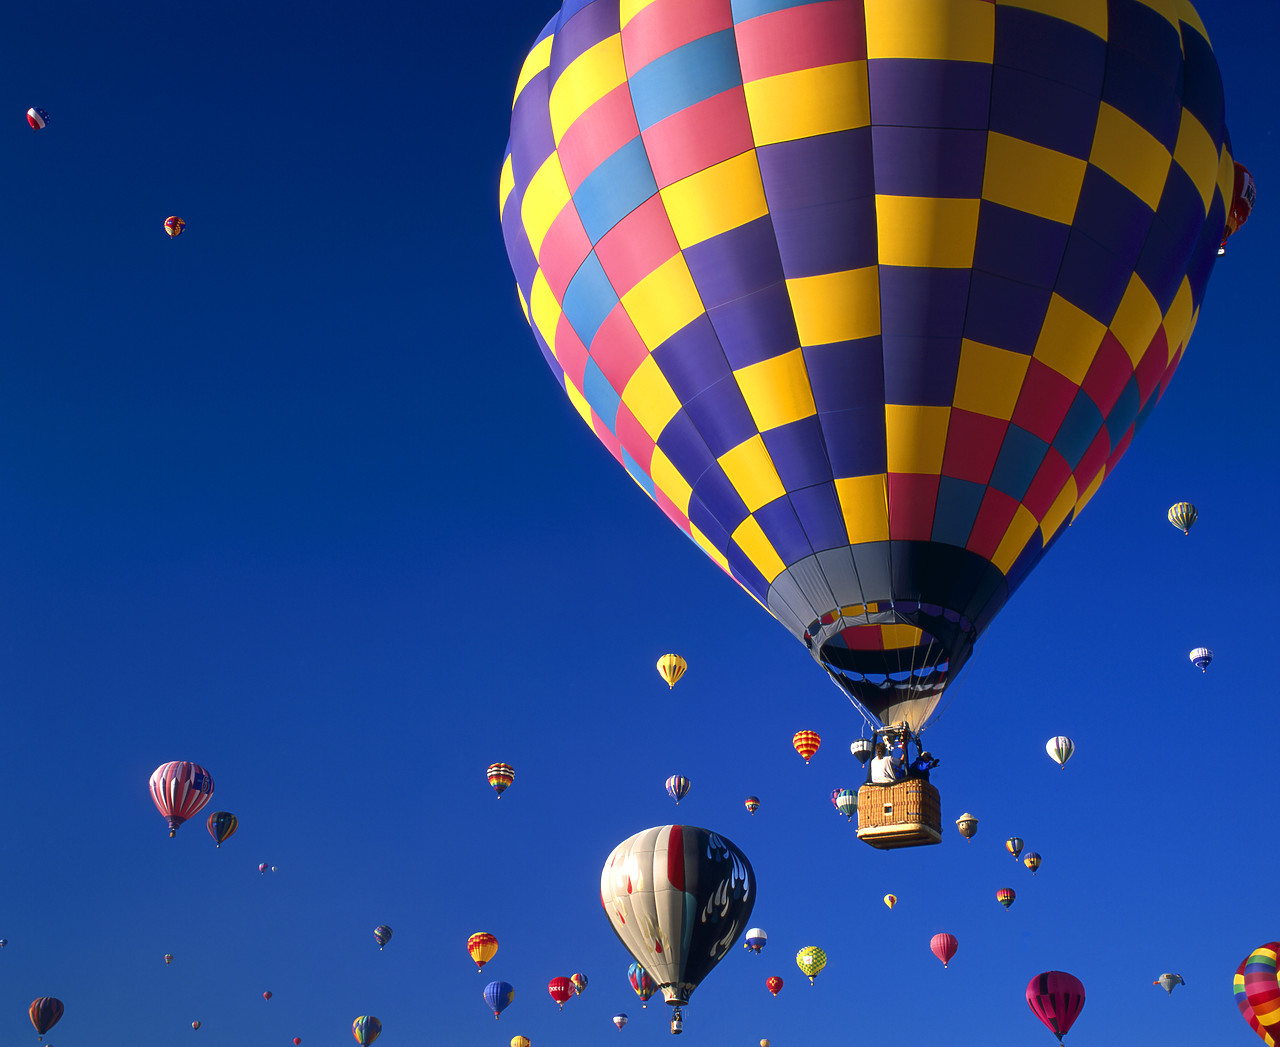 #990573-1 - Hot Air Balloons, Albuquerque, New Mexico, USA